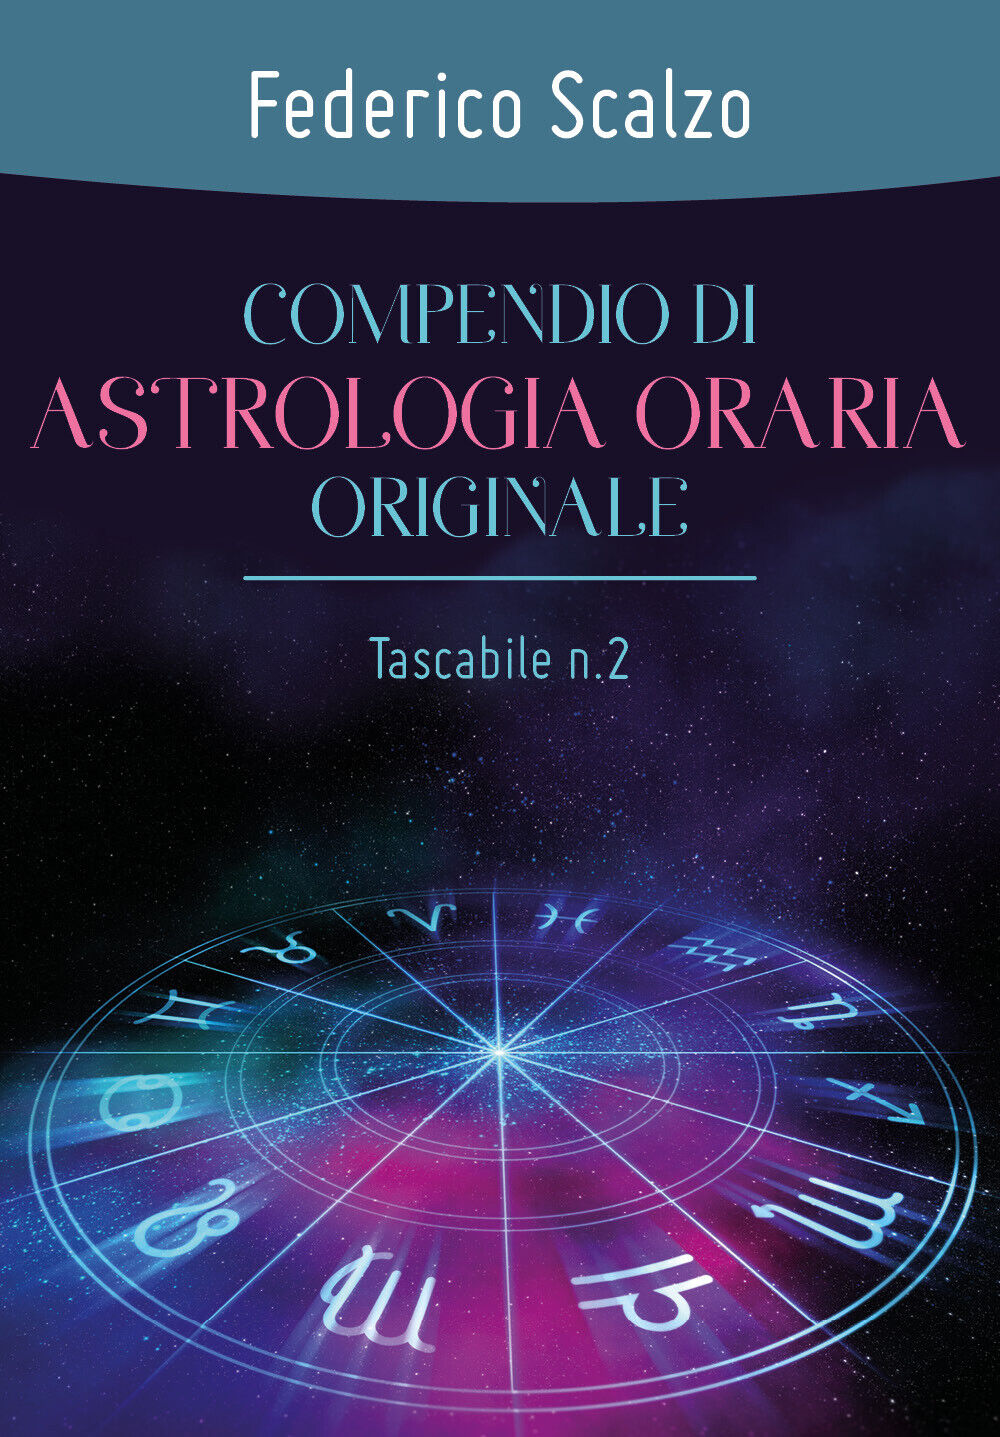 Compendio di astrologia oraria originale (tascabile n.2)  di Federico Scalzo libro usato